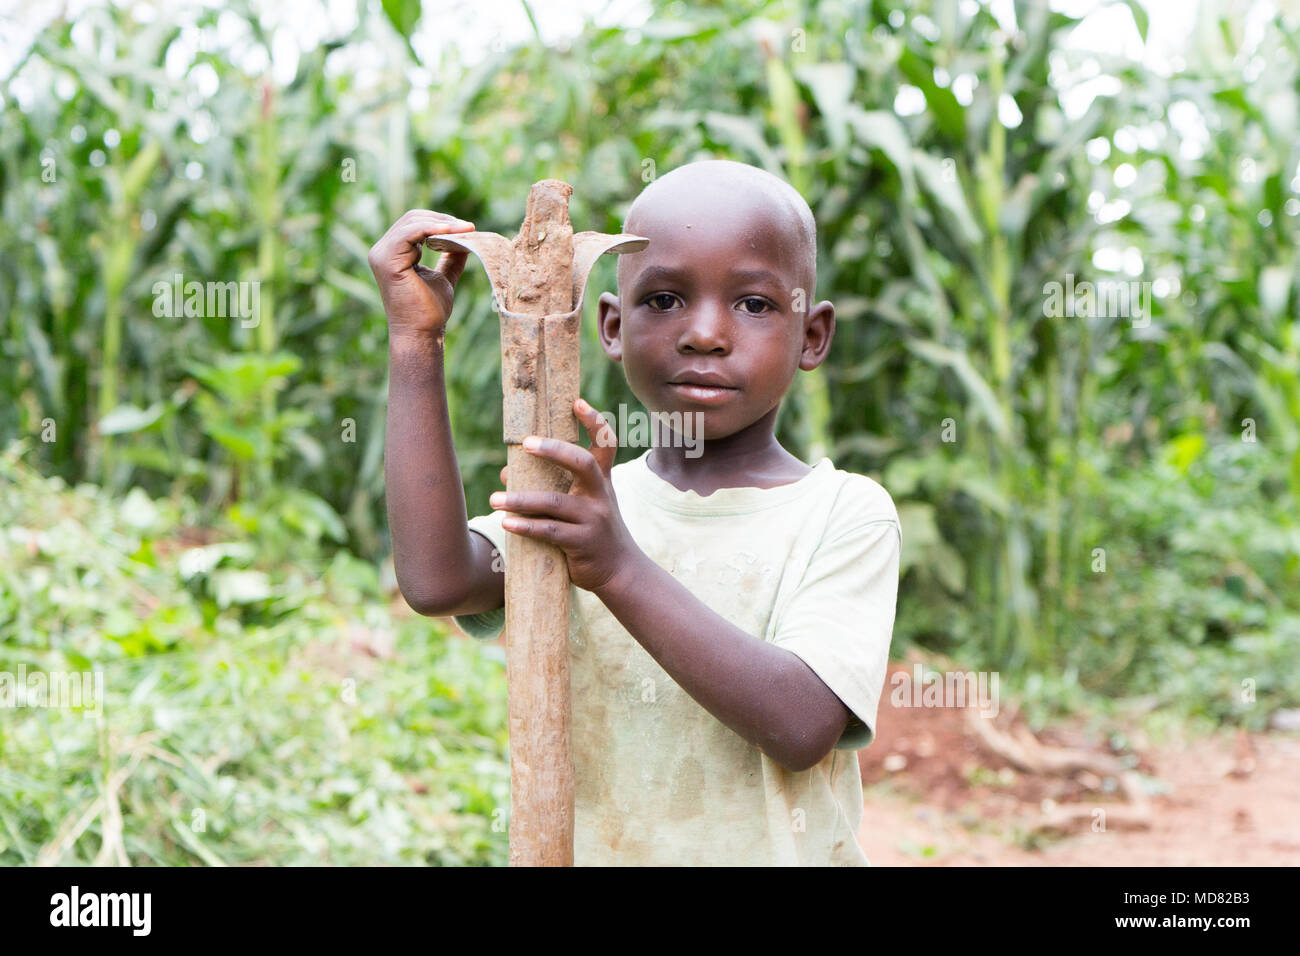 Uganda. 17 June 2017. A little Ugandan boy holding a hoe. Stock Photo